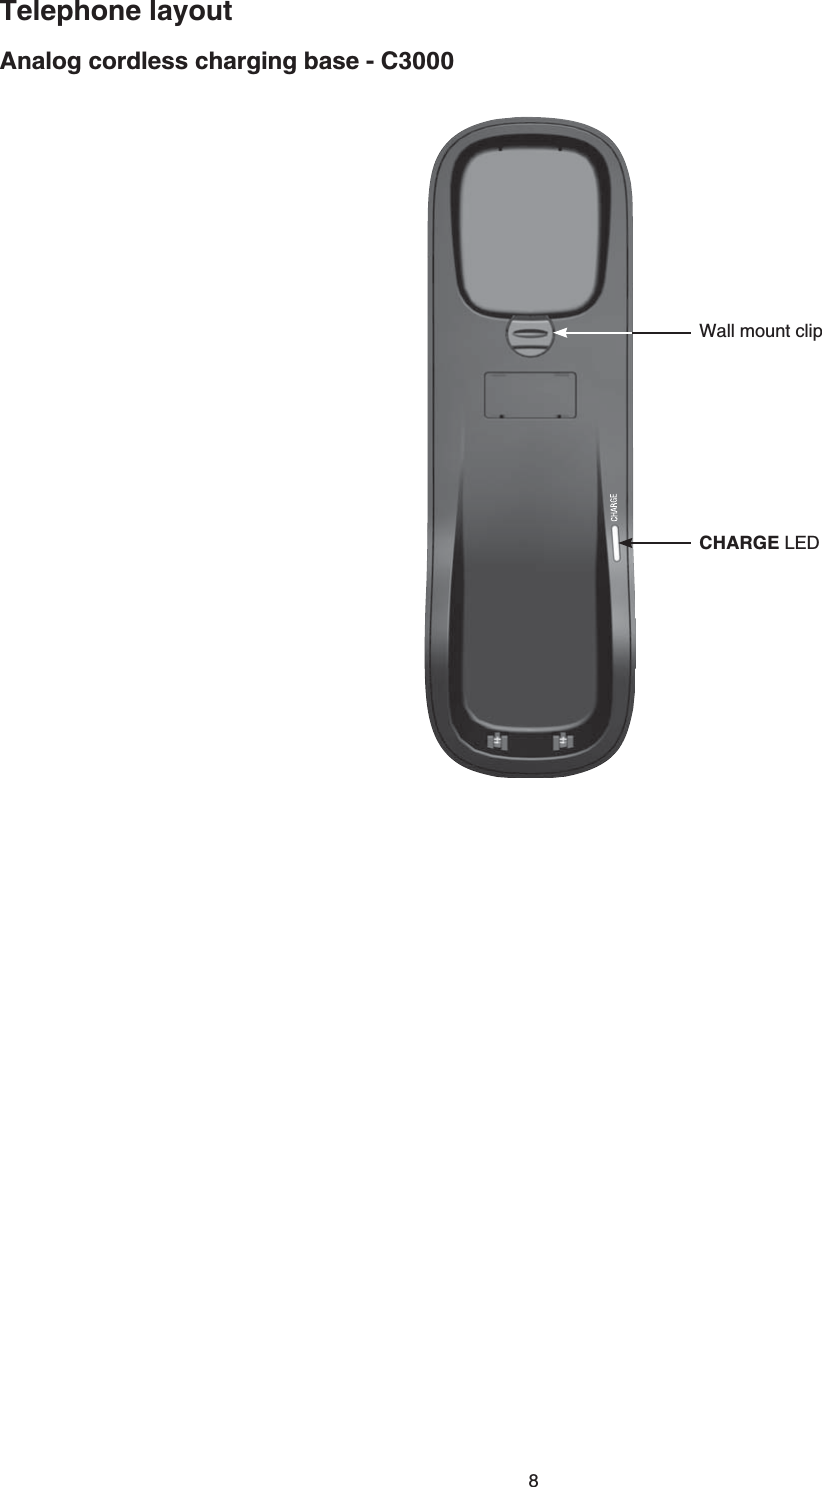 8Analog cordless charging base - C3000Telephone layoutWall mount clipCHARGE.&apos;&amp;